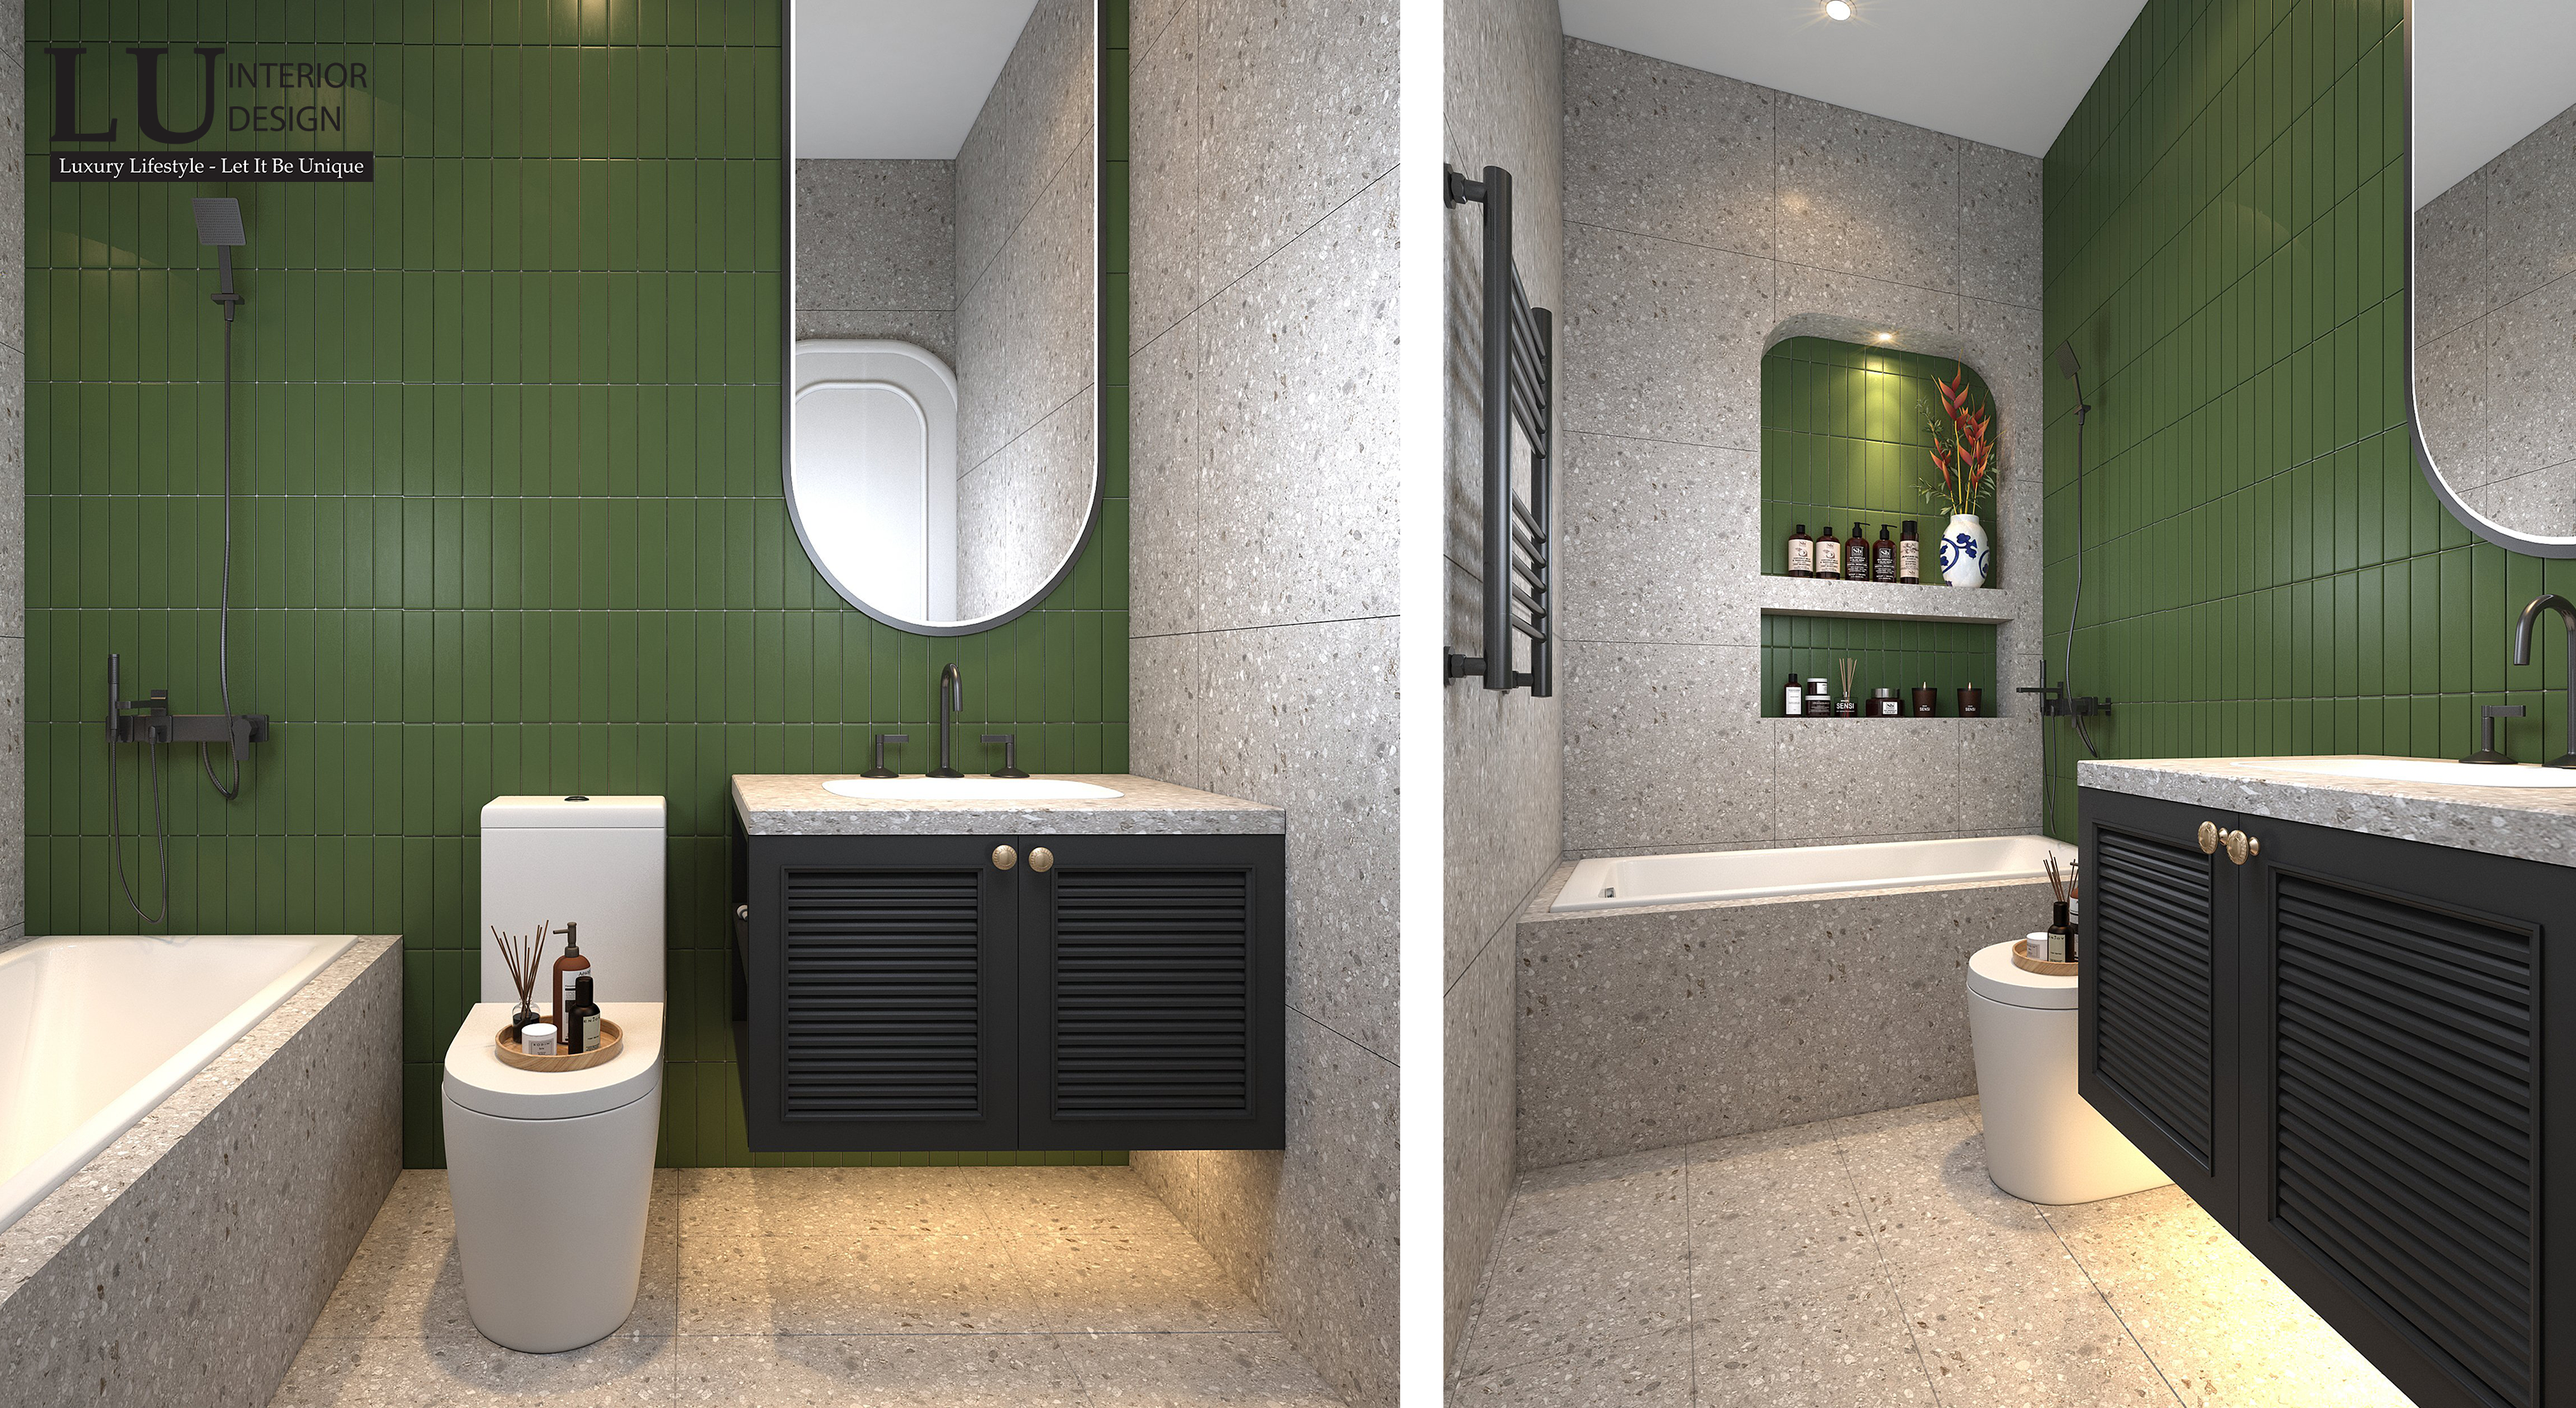 Không gian phòng tắm giản dị nhưng đầy tinh tế, đáp ứng đầy đủ nhu cầu của chủ nhân. Ảnh: LU Design